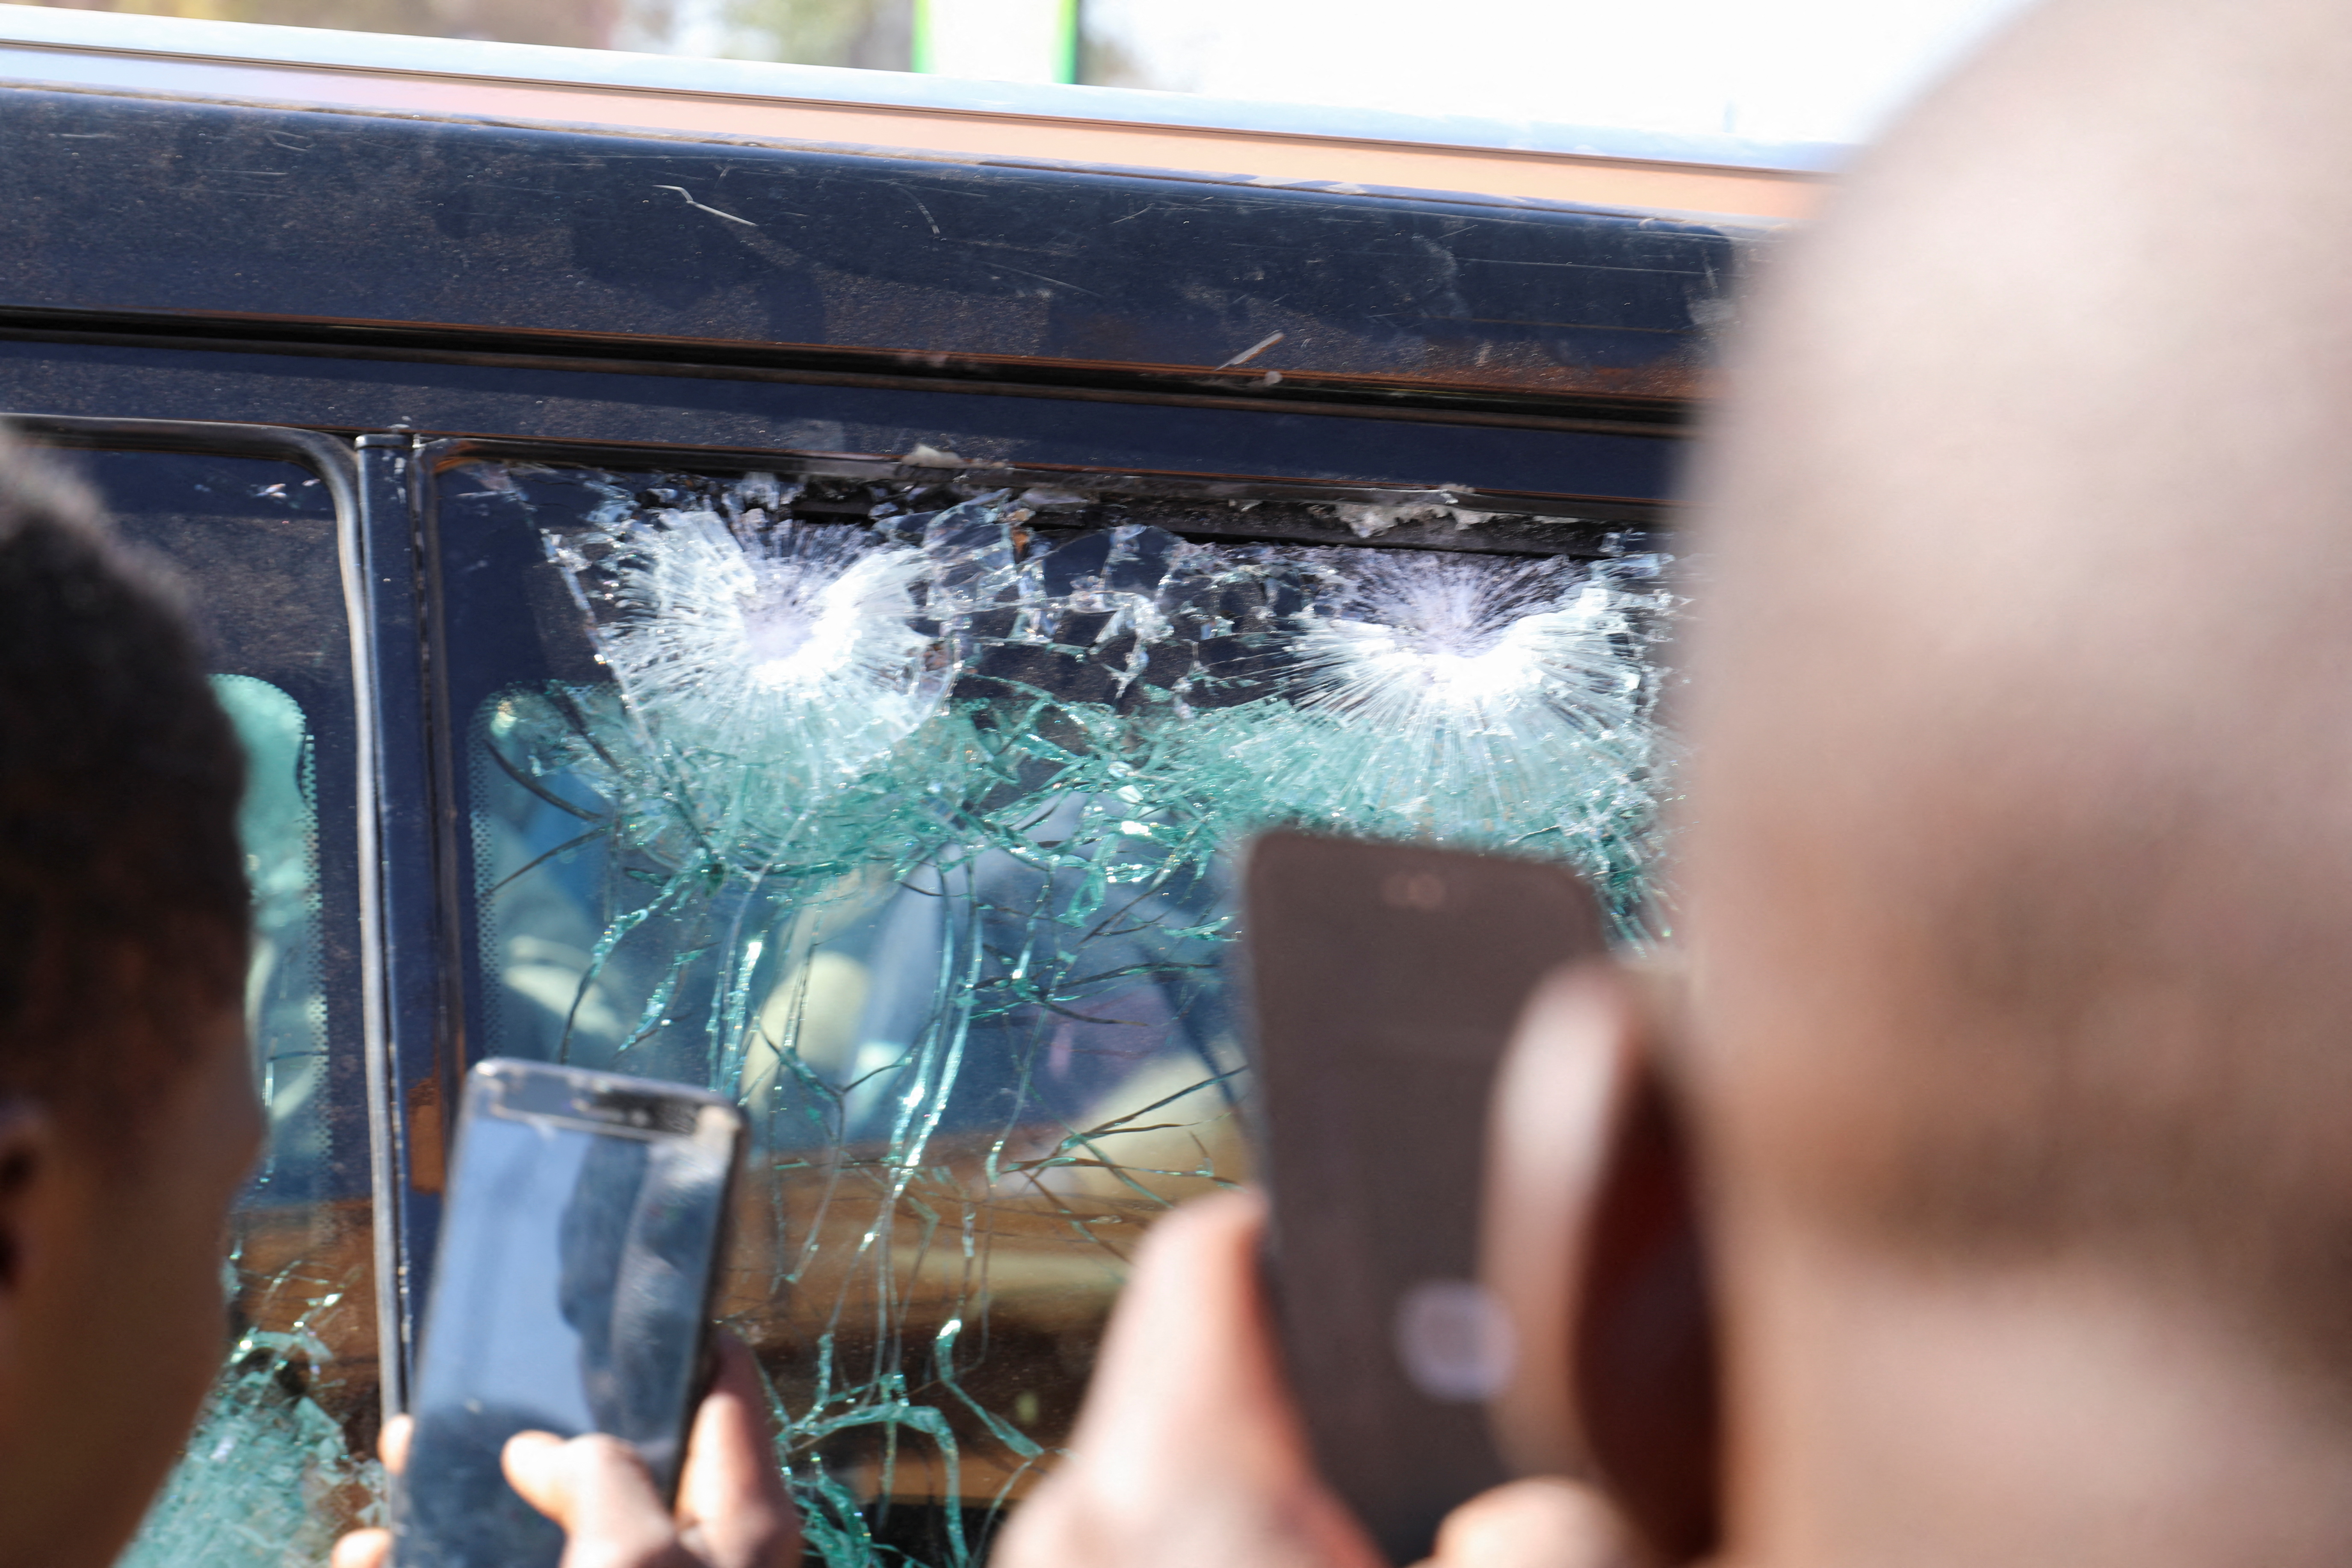 Njerëzit bëjnë fotografi të ndikimit të plumbave në një dritare të automjetit që i përket presidencës pasi Presidenti i Burkina Faso Roch Kabore u ndalua në një kamp ushtarak pas të shtënave të forta pranë rezidencës së presidentit në Ouagadougou, Burkina Faso, 24 janar 2022. REUTERS/ Vincent Bado